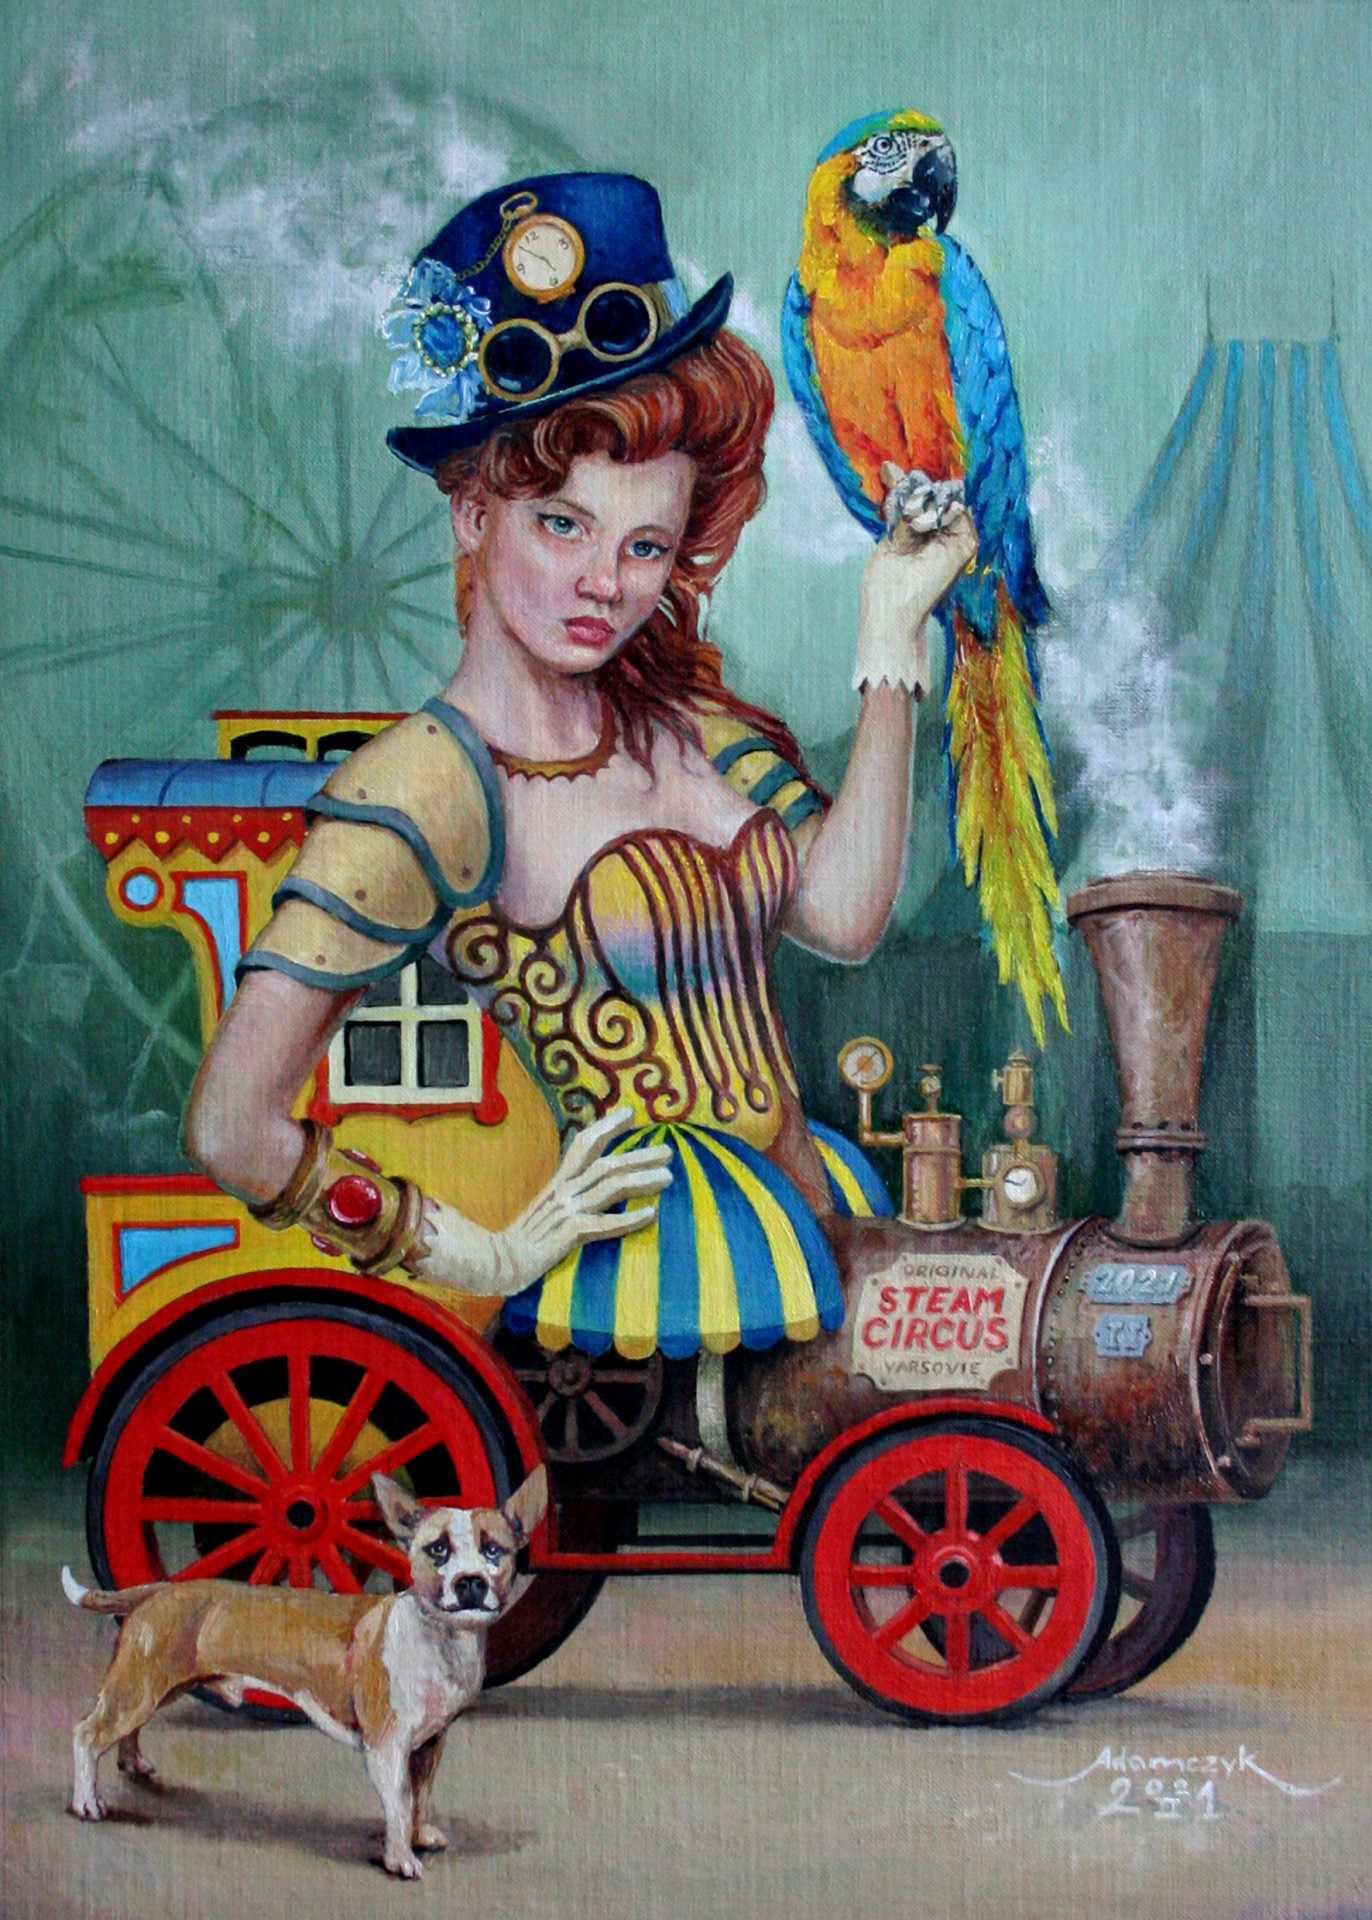 Cyrk parowy - Steam Circus